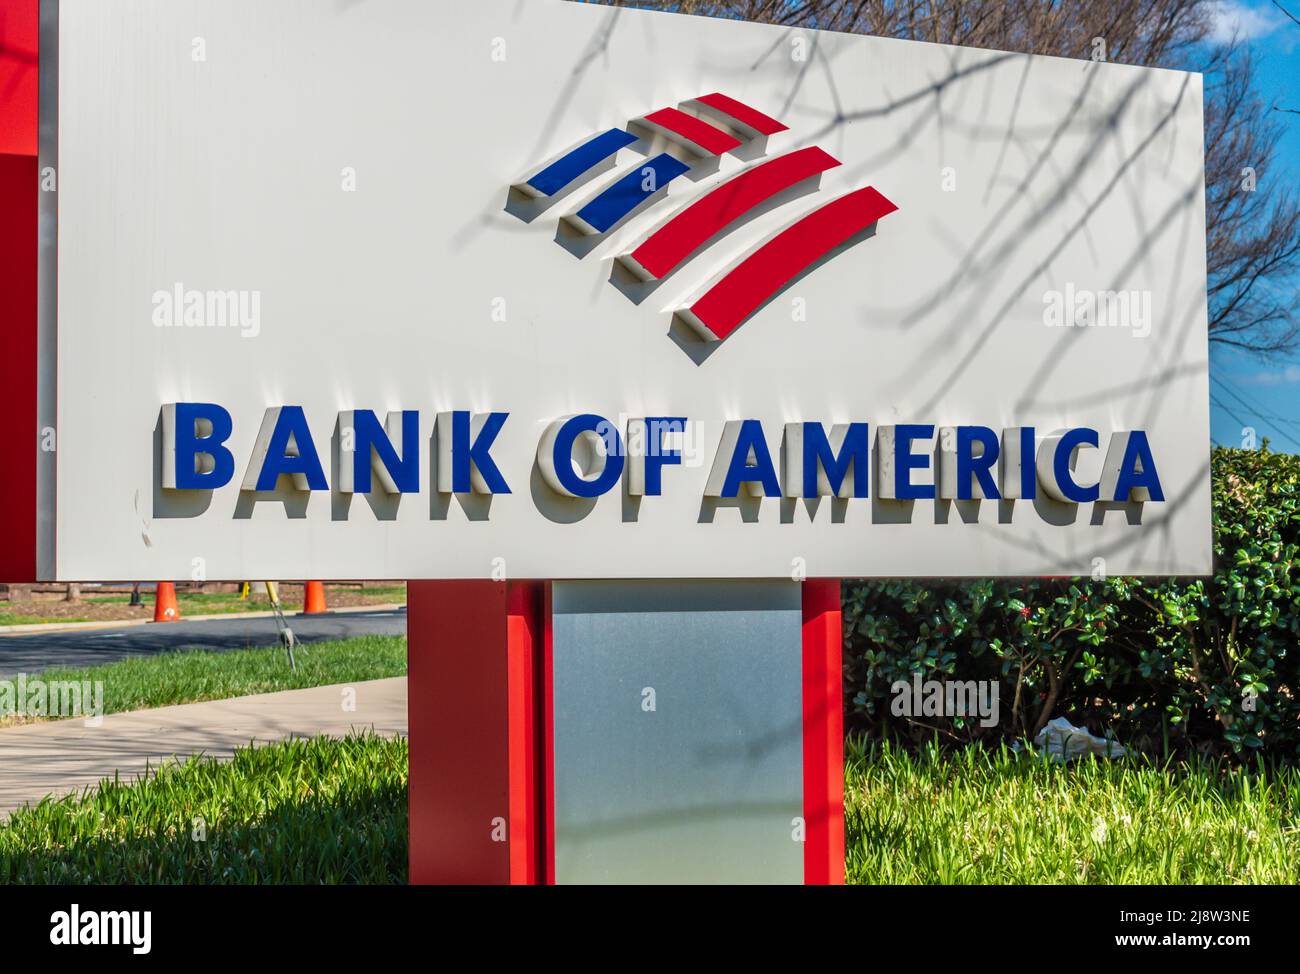 Extérieur, marque et logo « Bank of America » sur pied en rouge, blanc et bleu avec verdure et reflets par temps ensoleillé. Banque D'Images